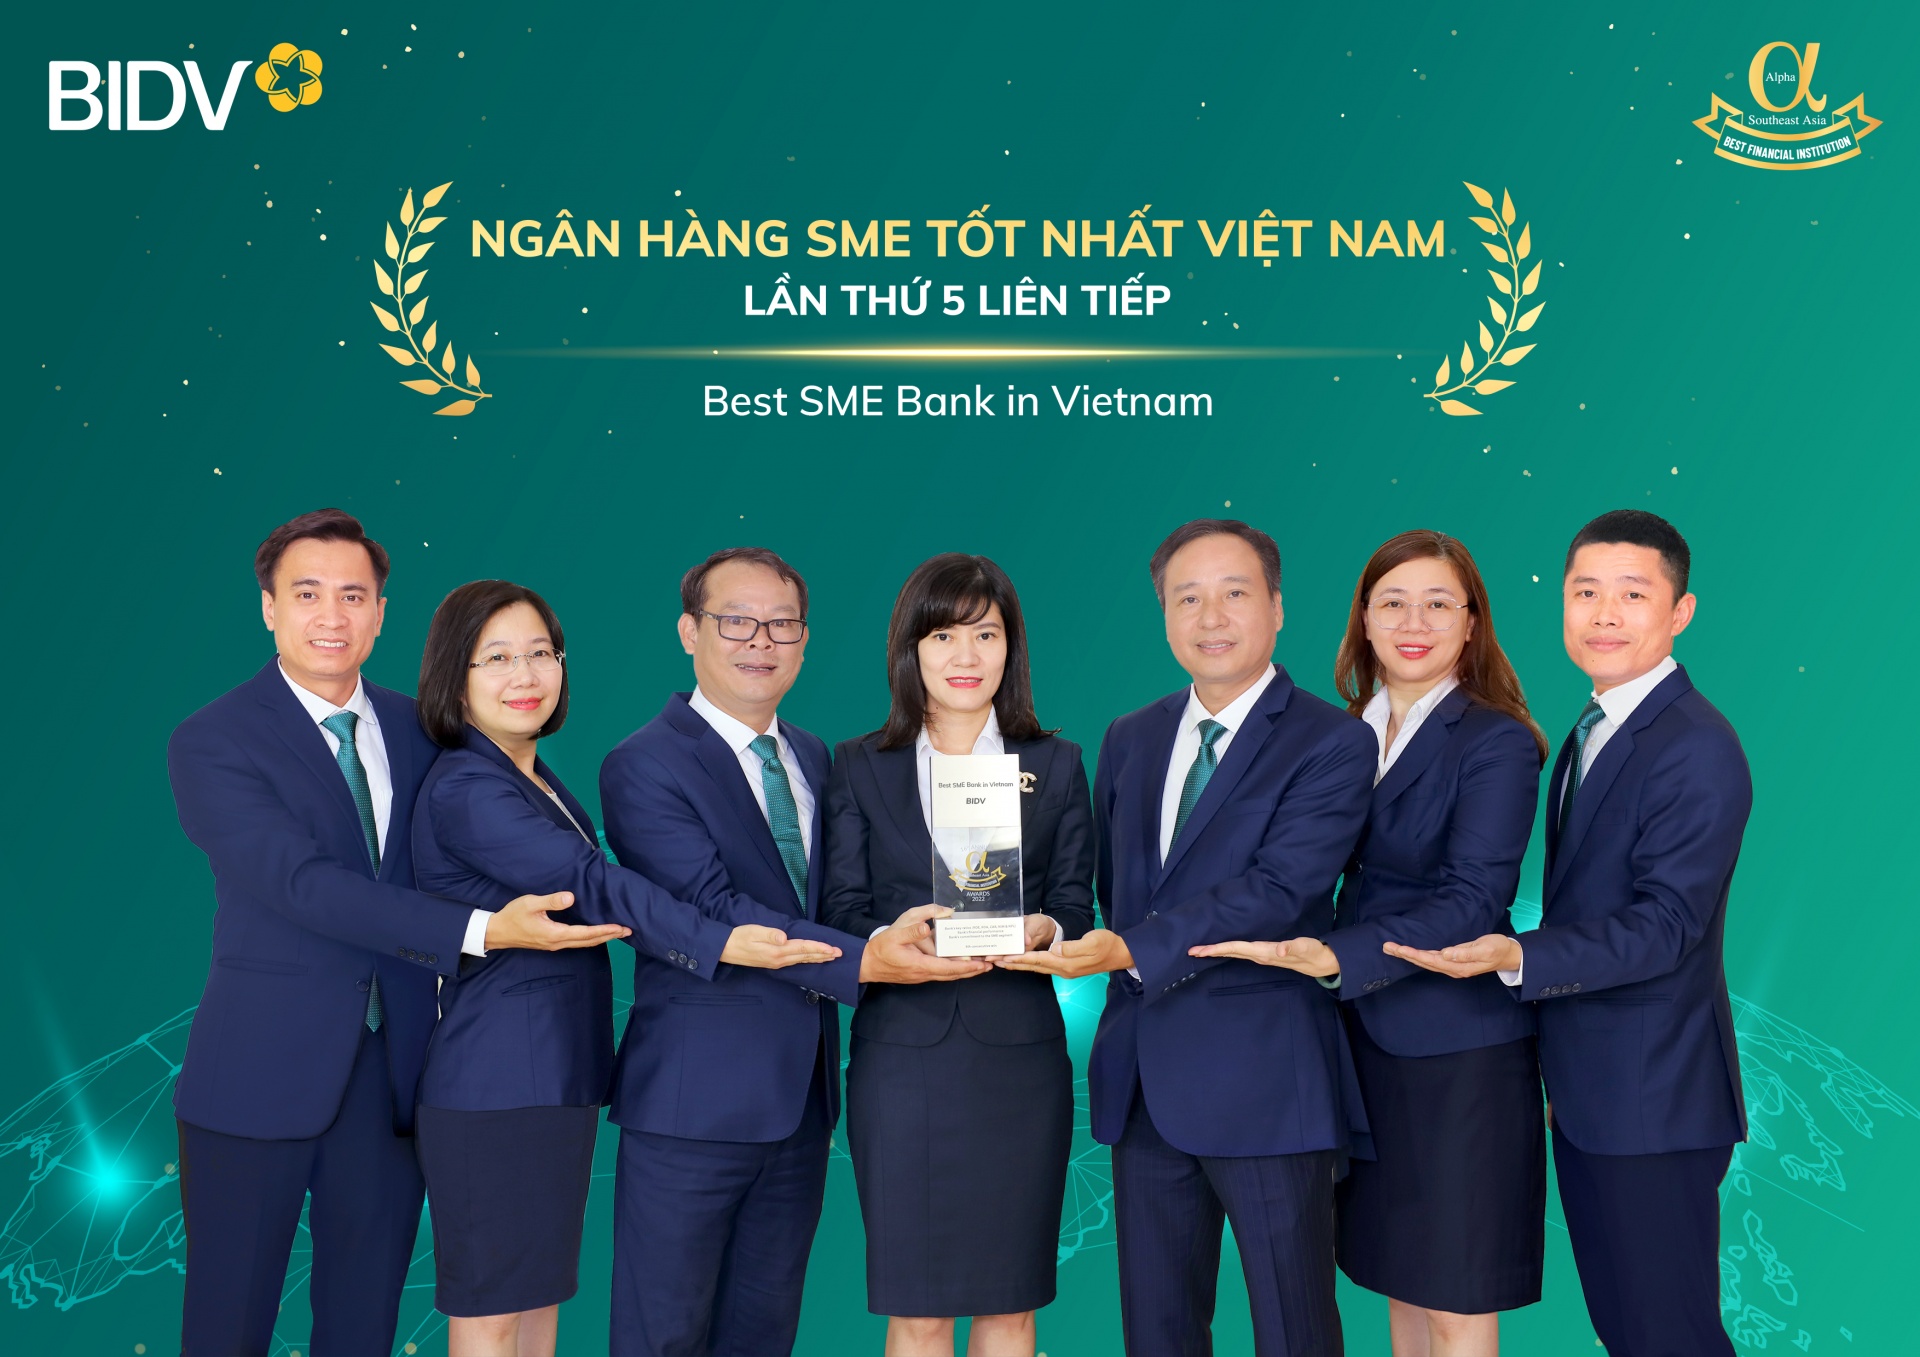 BIDV được vinh danh Ngân hàng SME tốt nhất Việt Nam lần thứ 5 liên tiếp